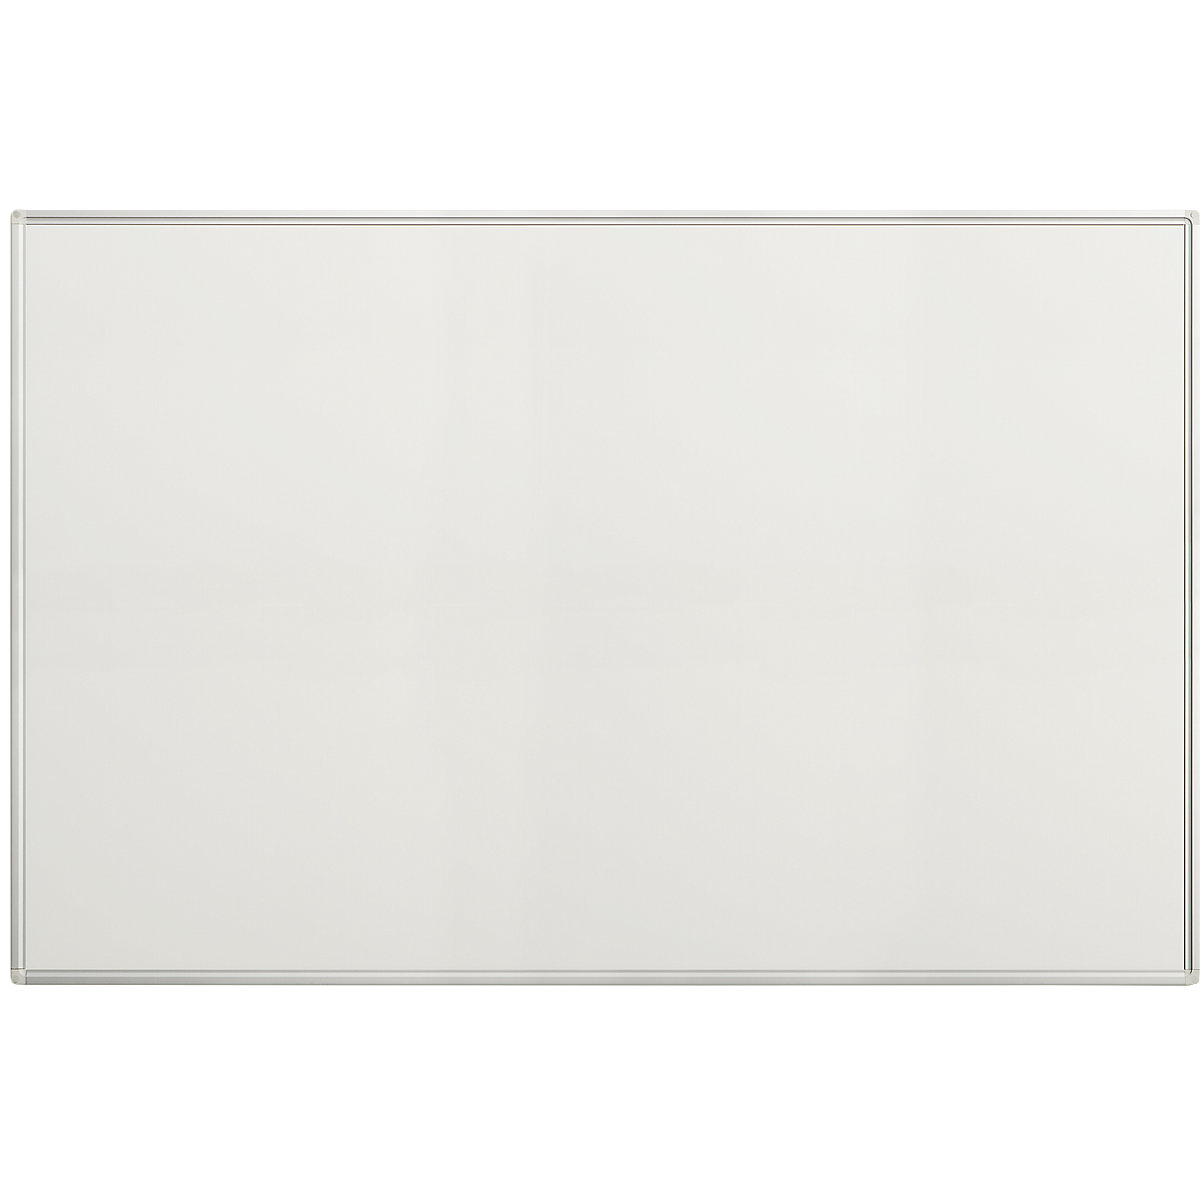 EUROKRAFTpro – Biała tablica Economy, blacha stalowa, lakierowana, szer. x wys. 1500 x 1000 mm